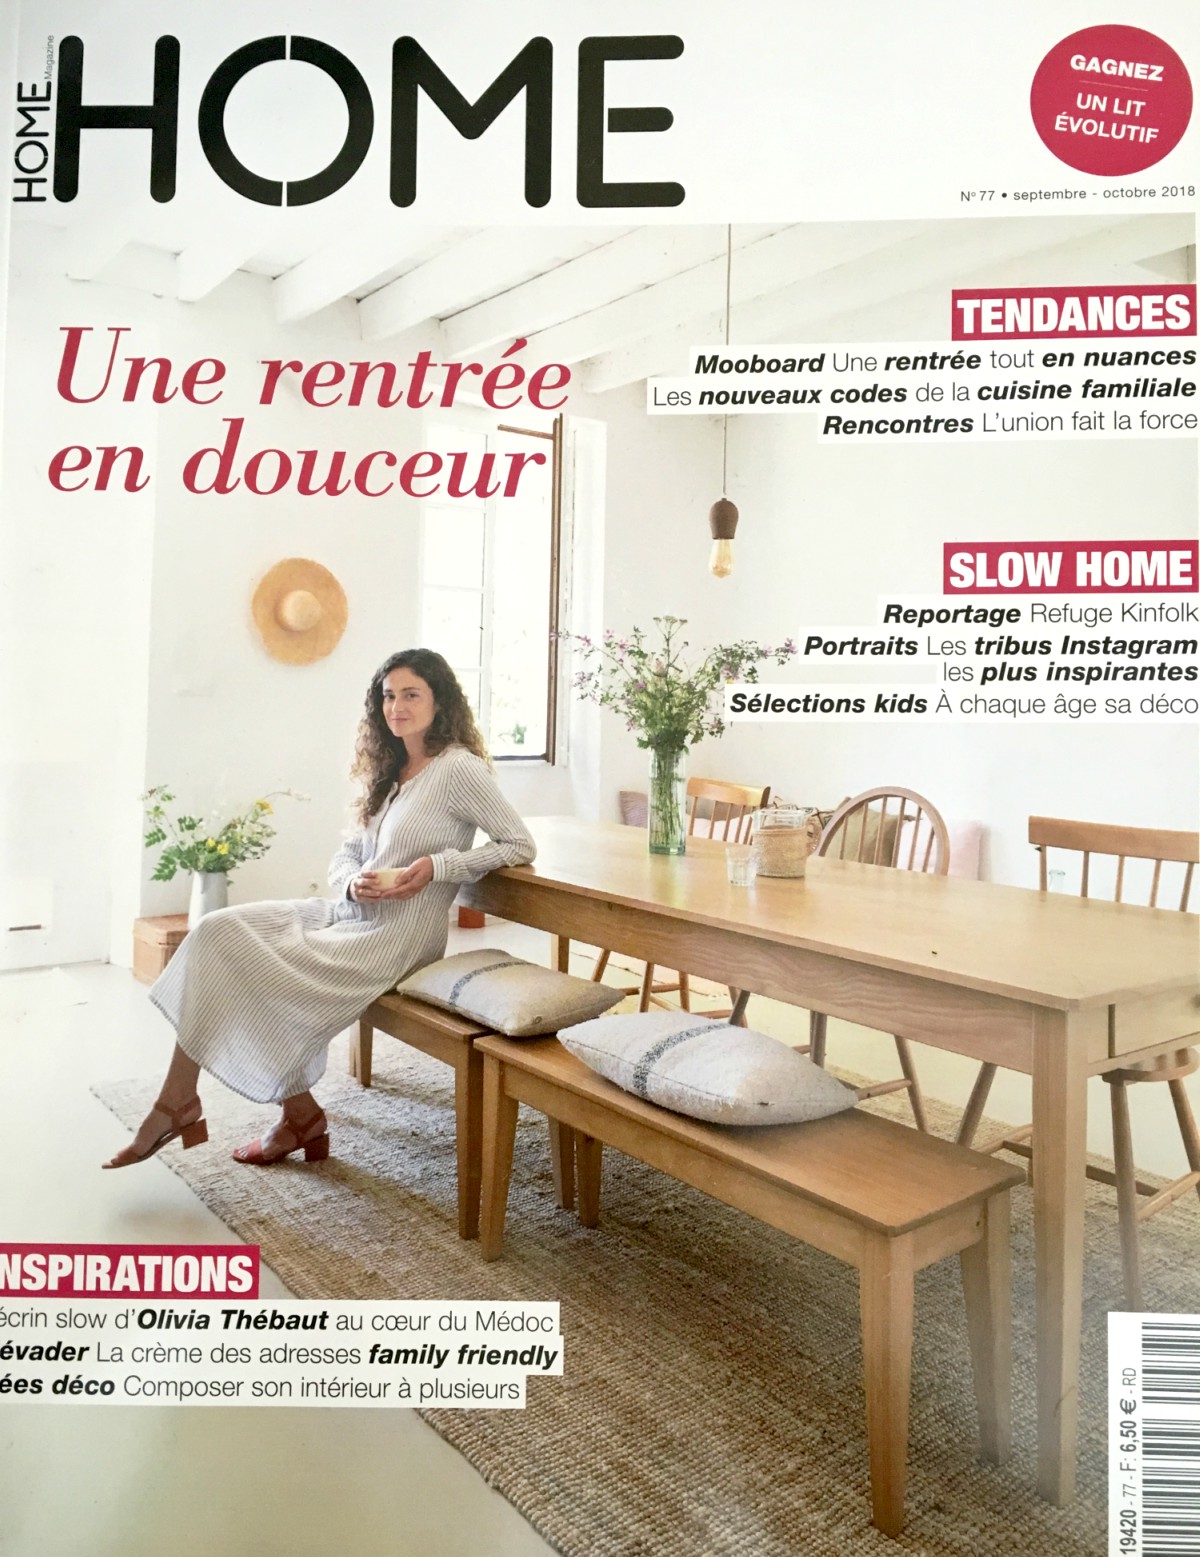 La maison d’hôtes Bel Estiu,  dans le magazine Home du mois de septembre octobre 2018